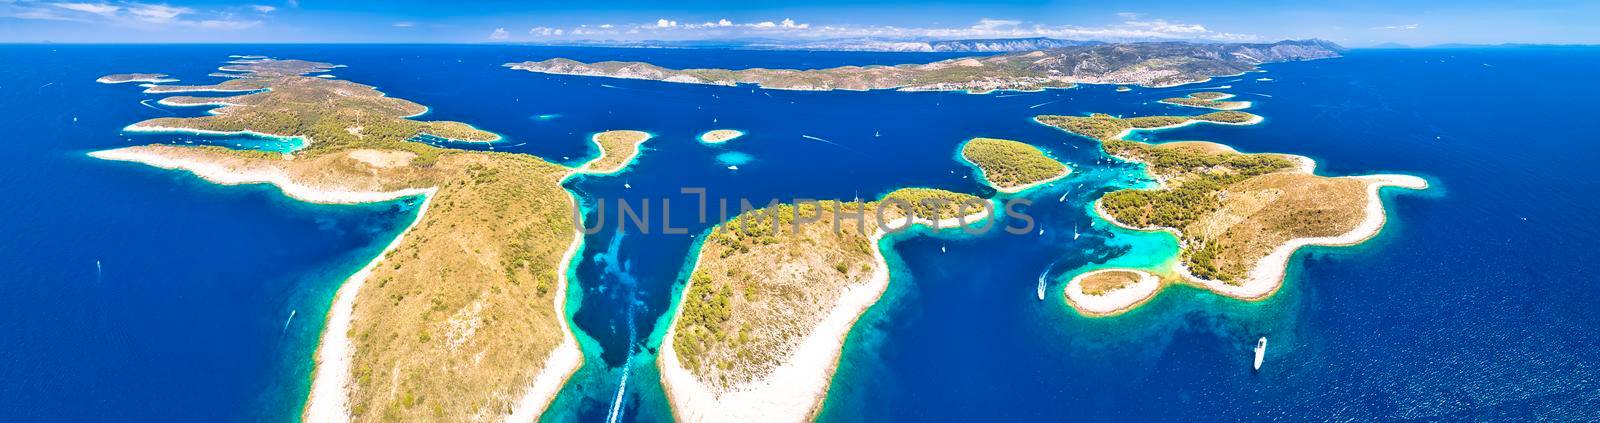 Archipelago of Croatia. Paklenski Otoci islands aerial view by xbrchx